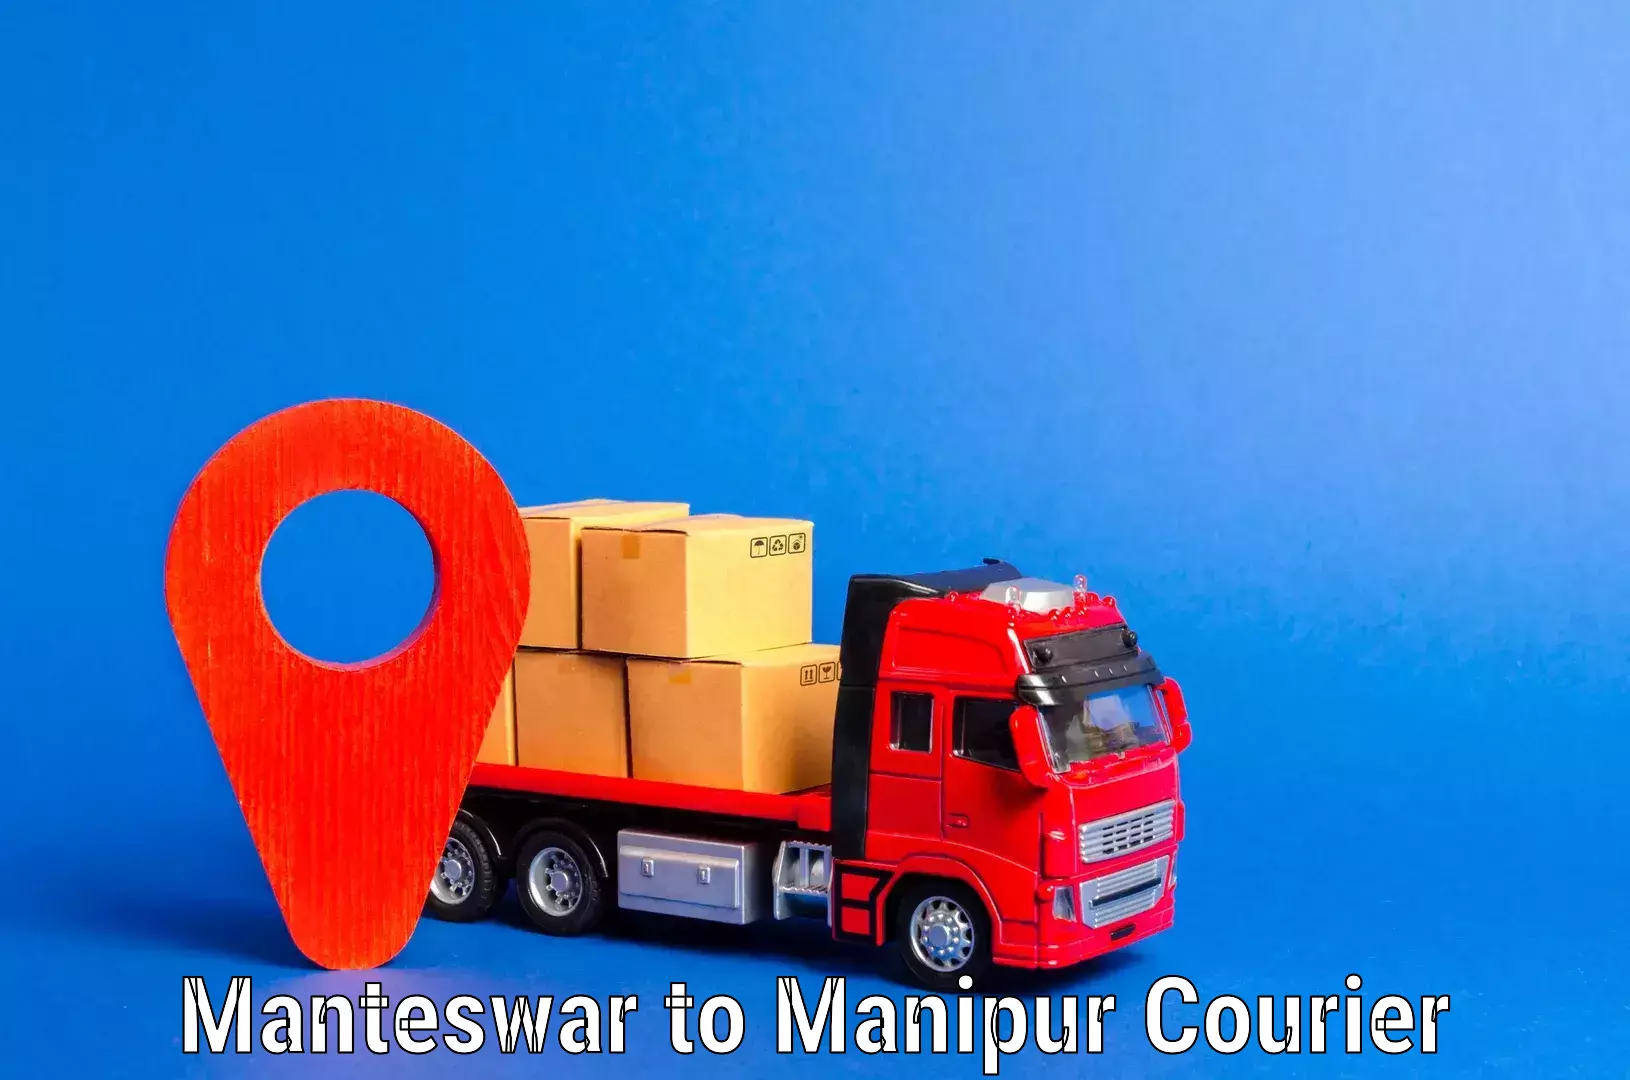 Furniture transport experts Manteswar to Manipur